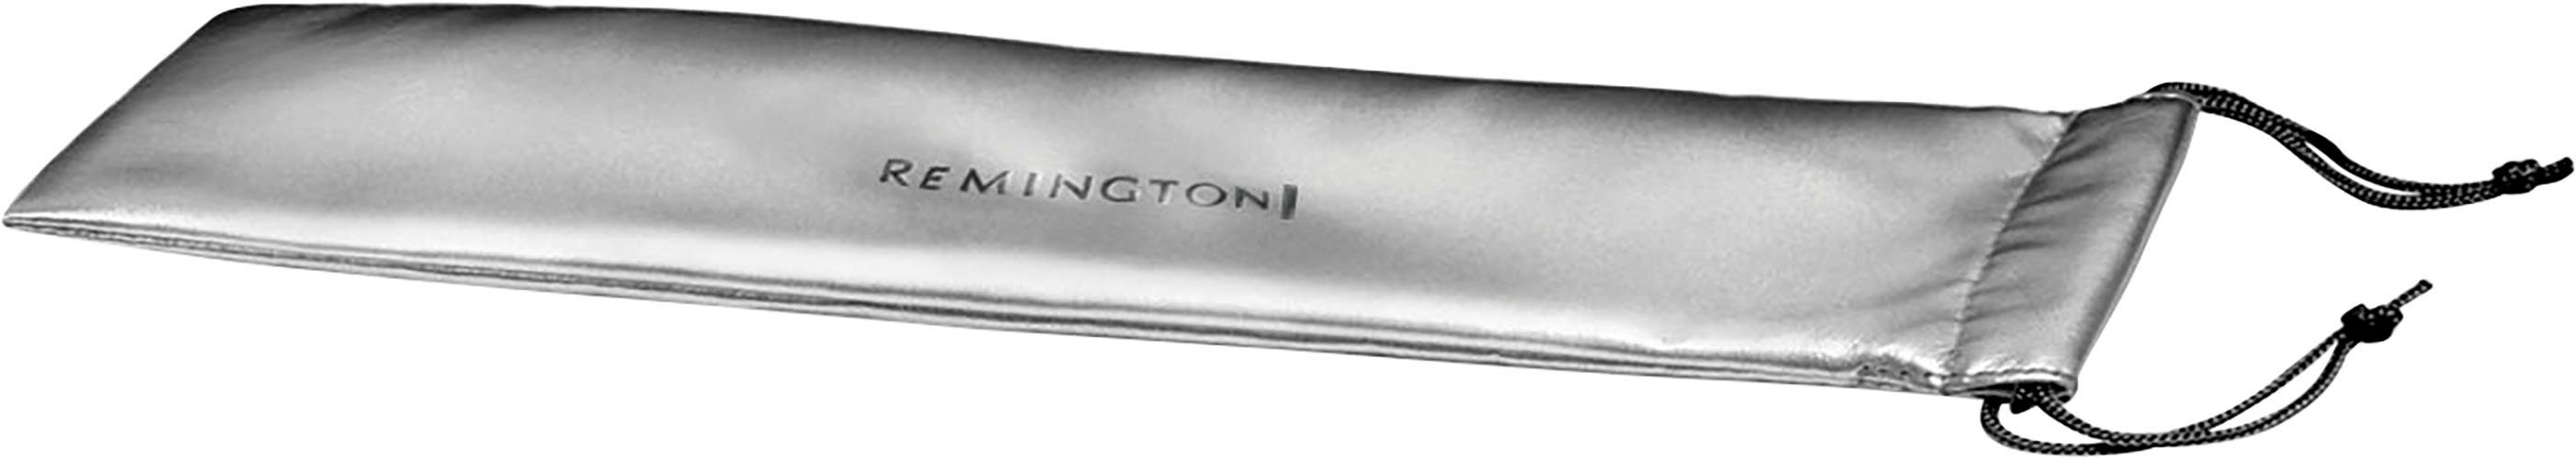 Remington Lockenstab Pearl kegelförmiger Lockenstab (CI95),  Keramik-Beschichtung, 13-25 mm für größere & kleinere Locken